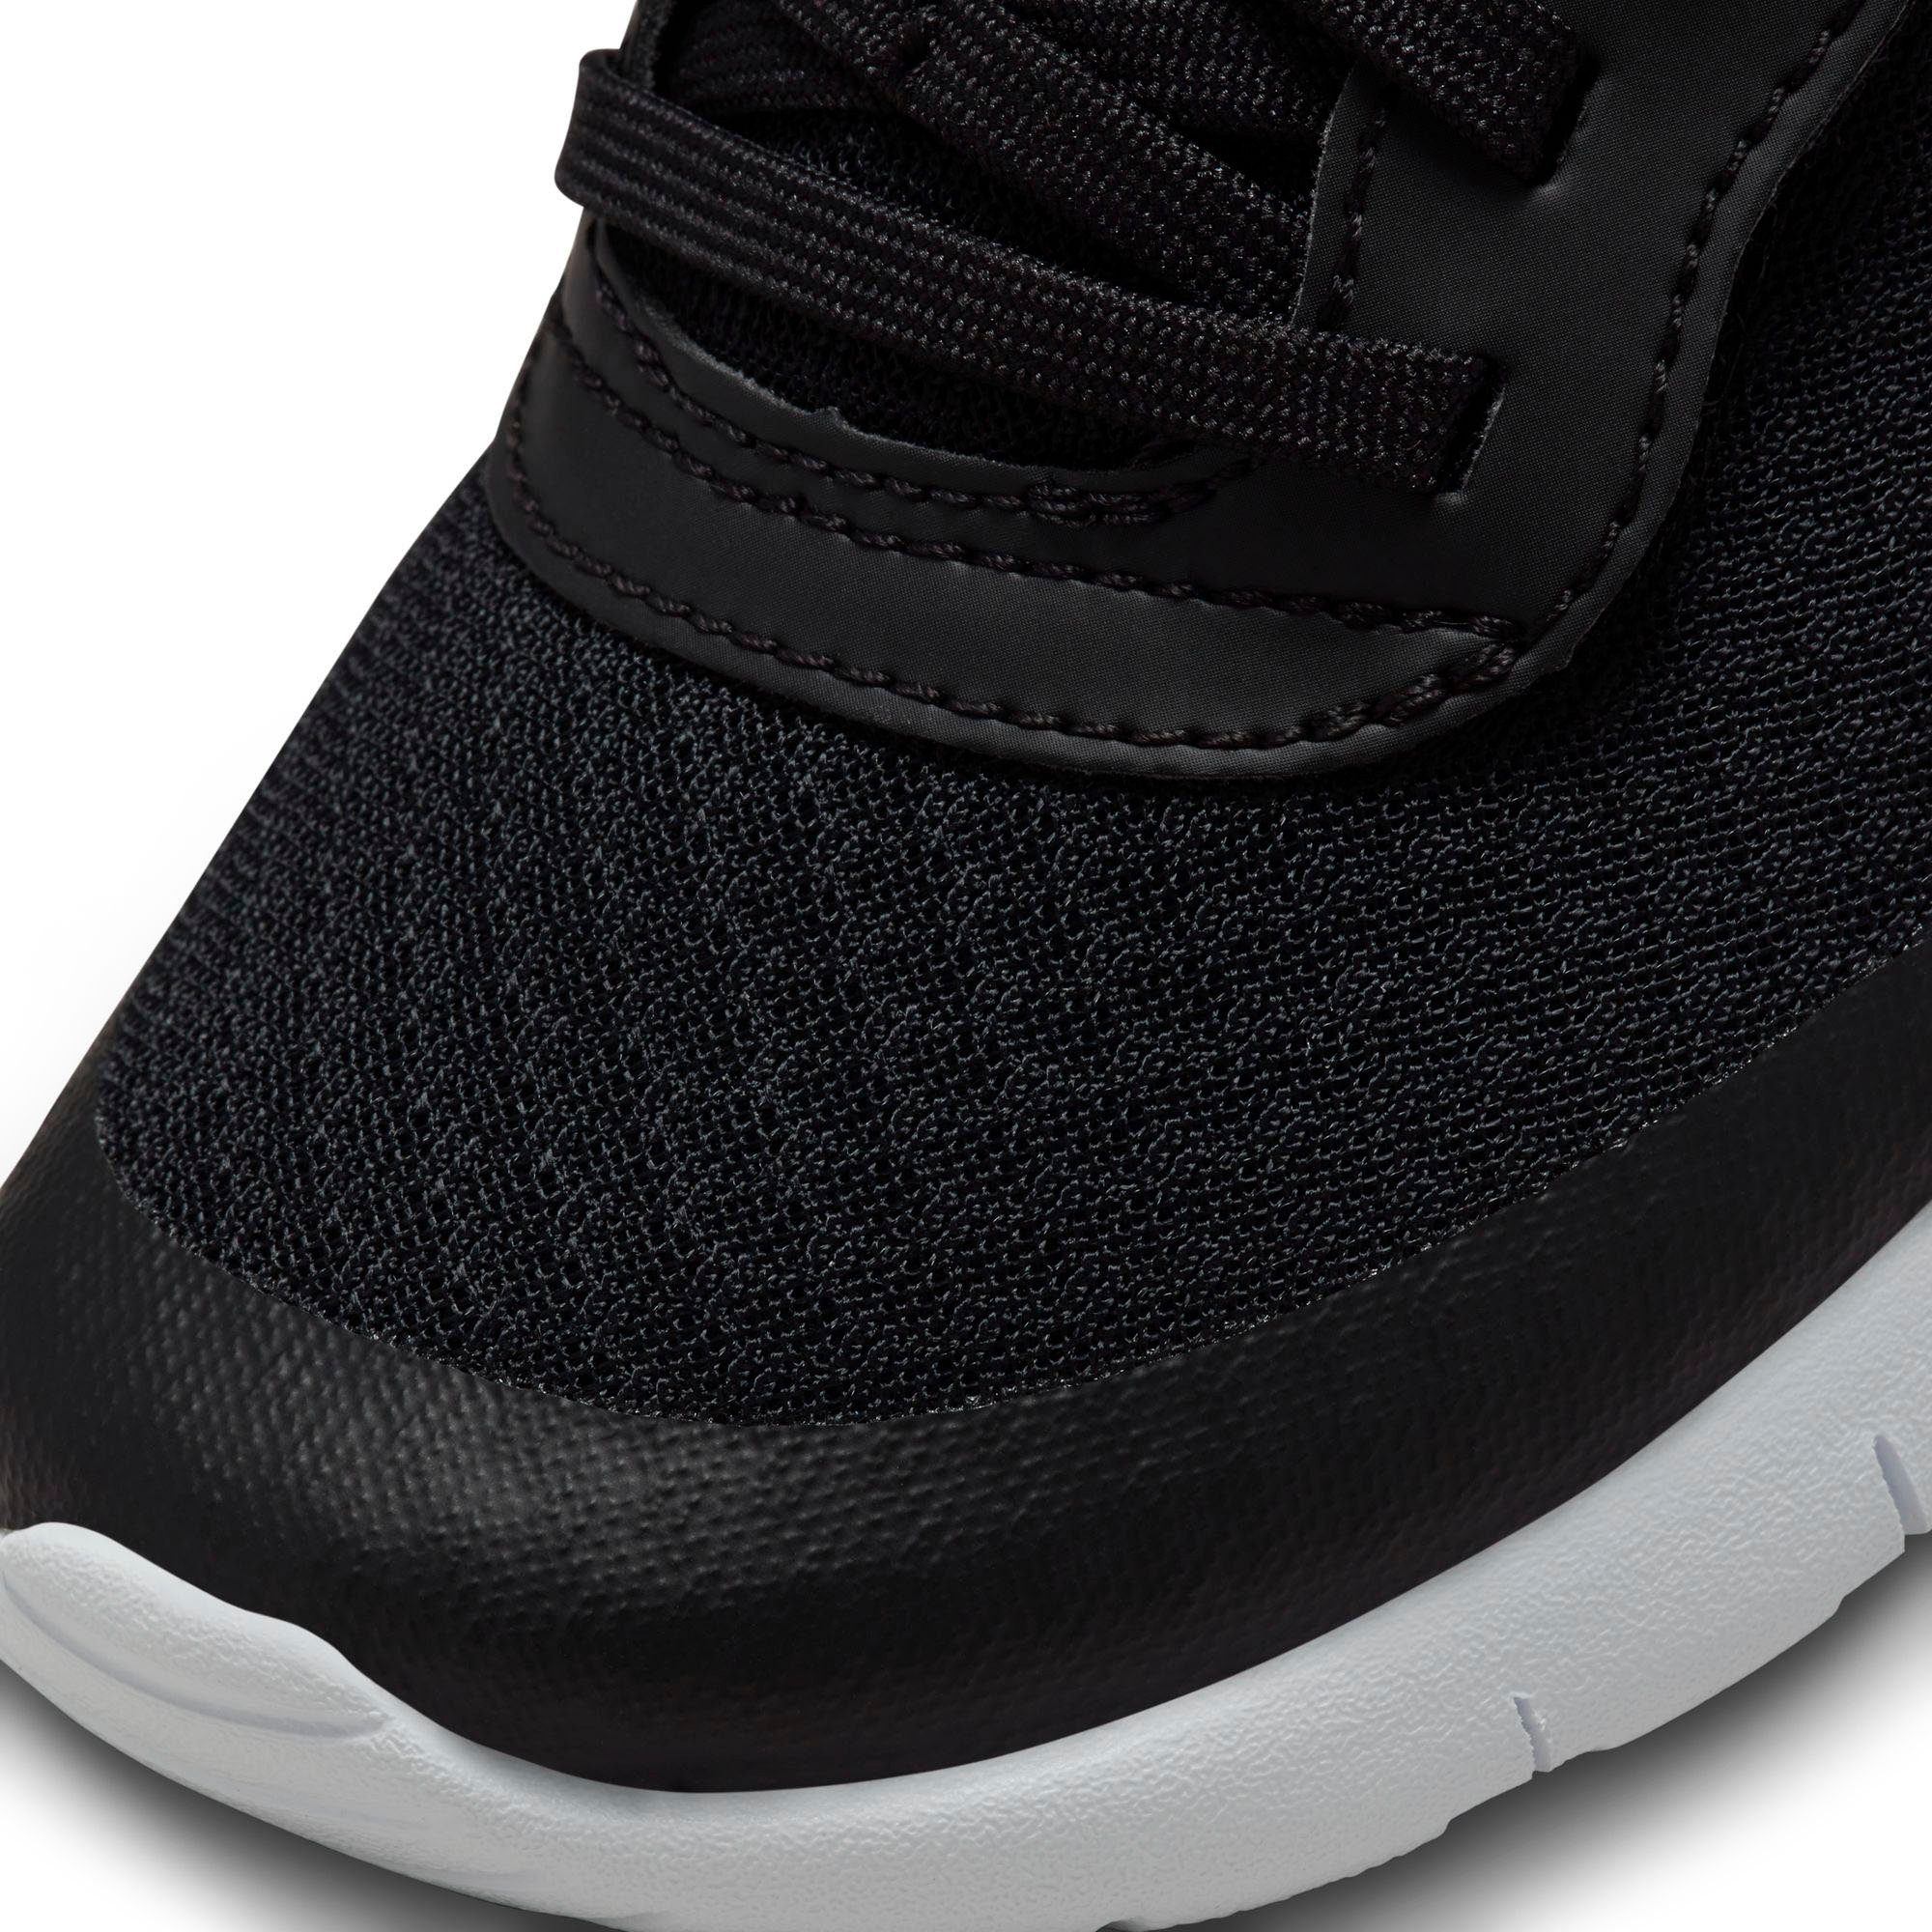 Sneaker black/white (PS) Tanjun Nike EZ Sportswear